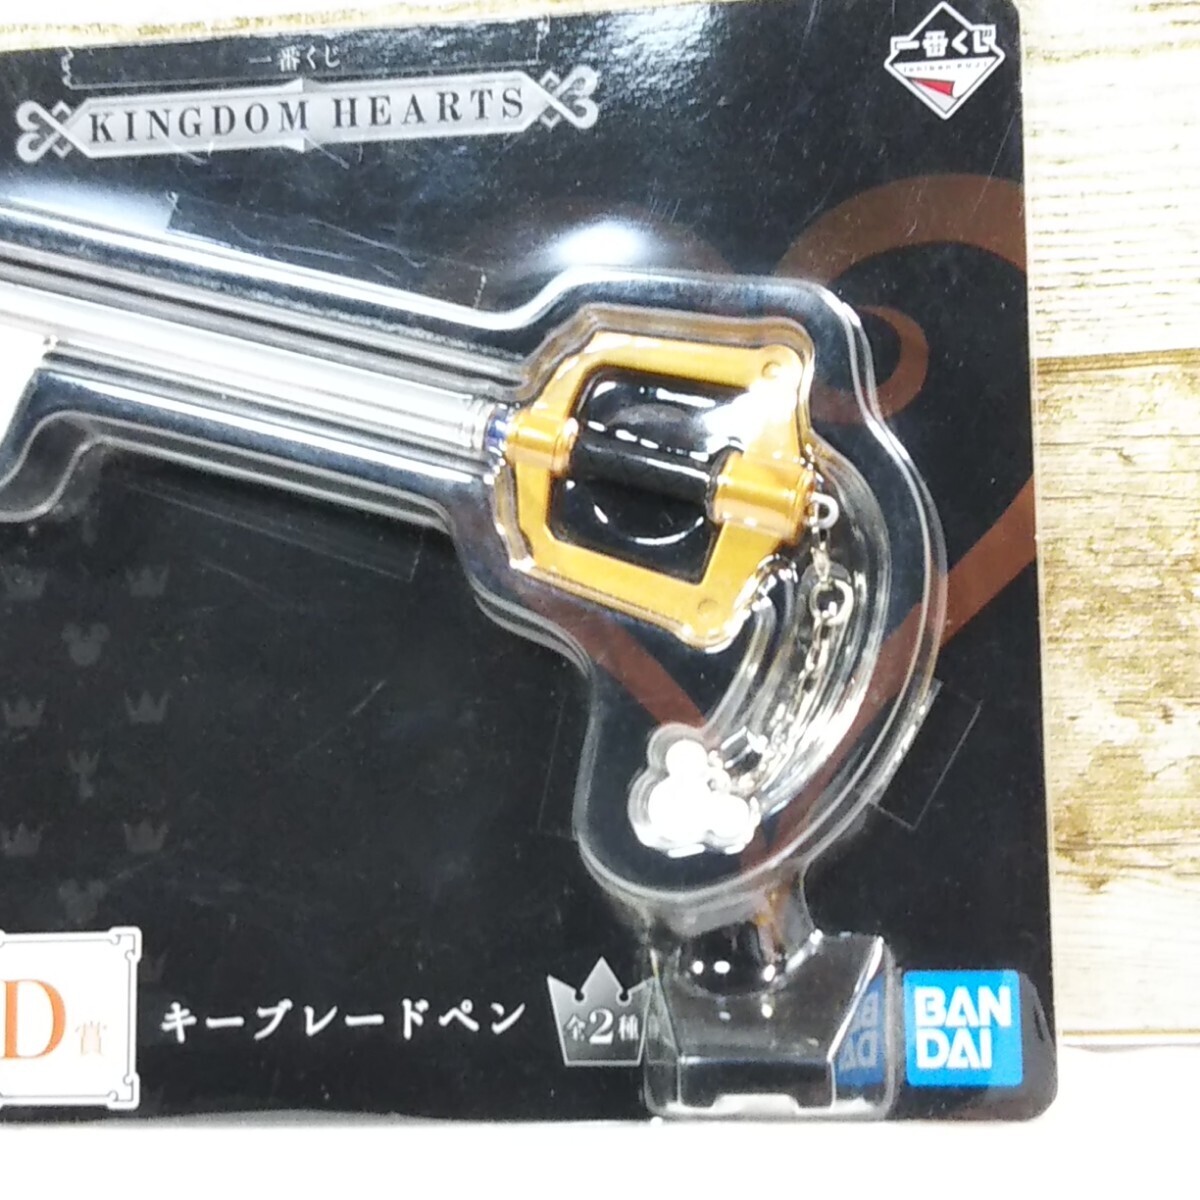  самый жребий Kingdom Hearts D. ключ лезвие авторучка BANDAI